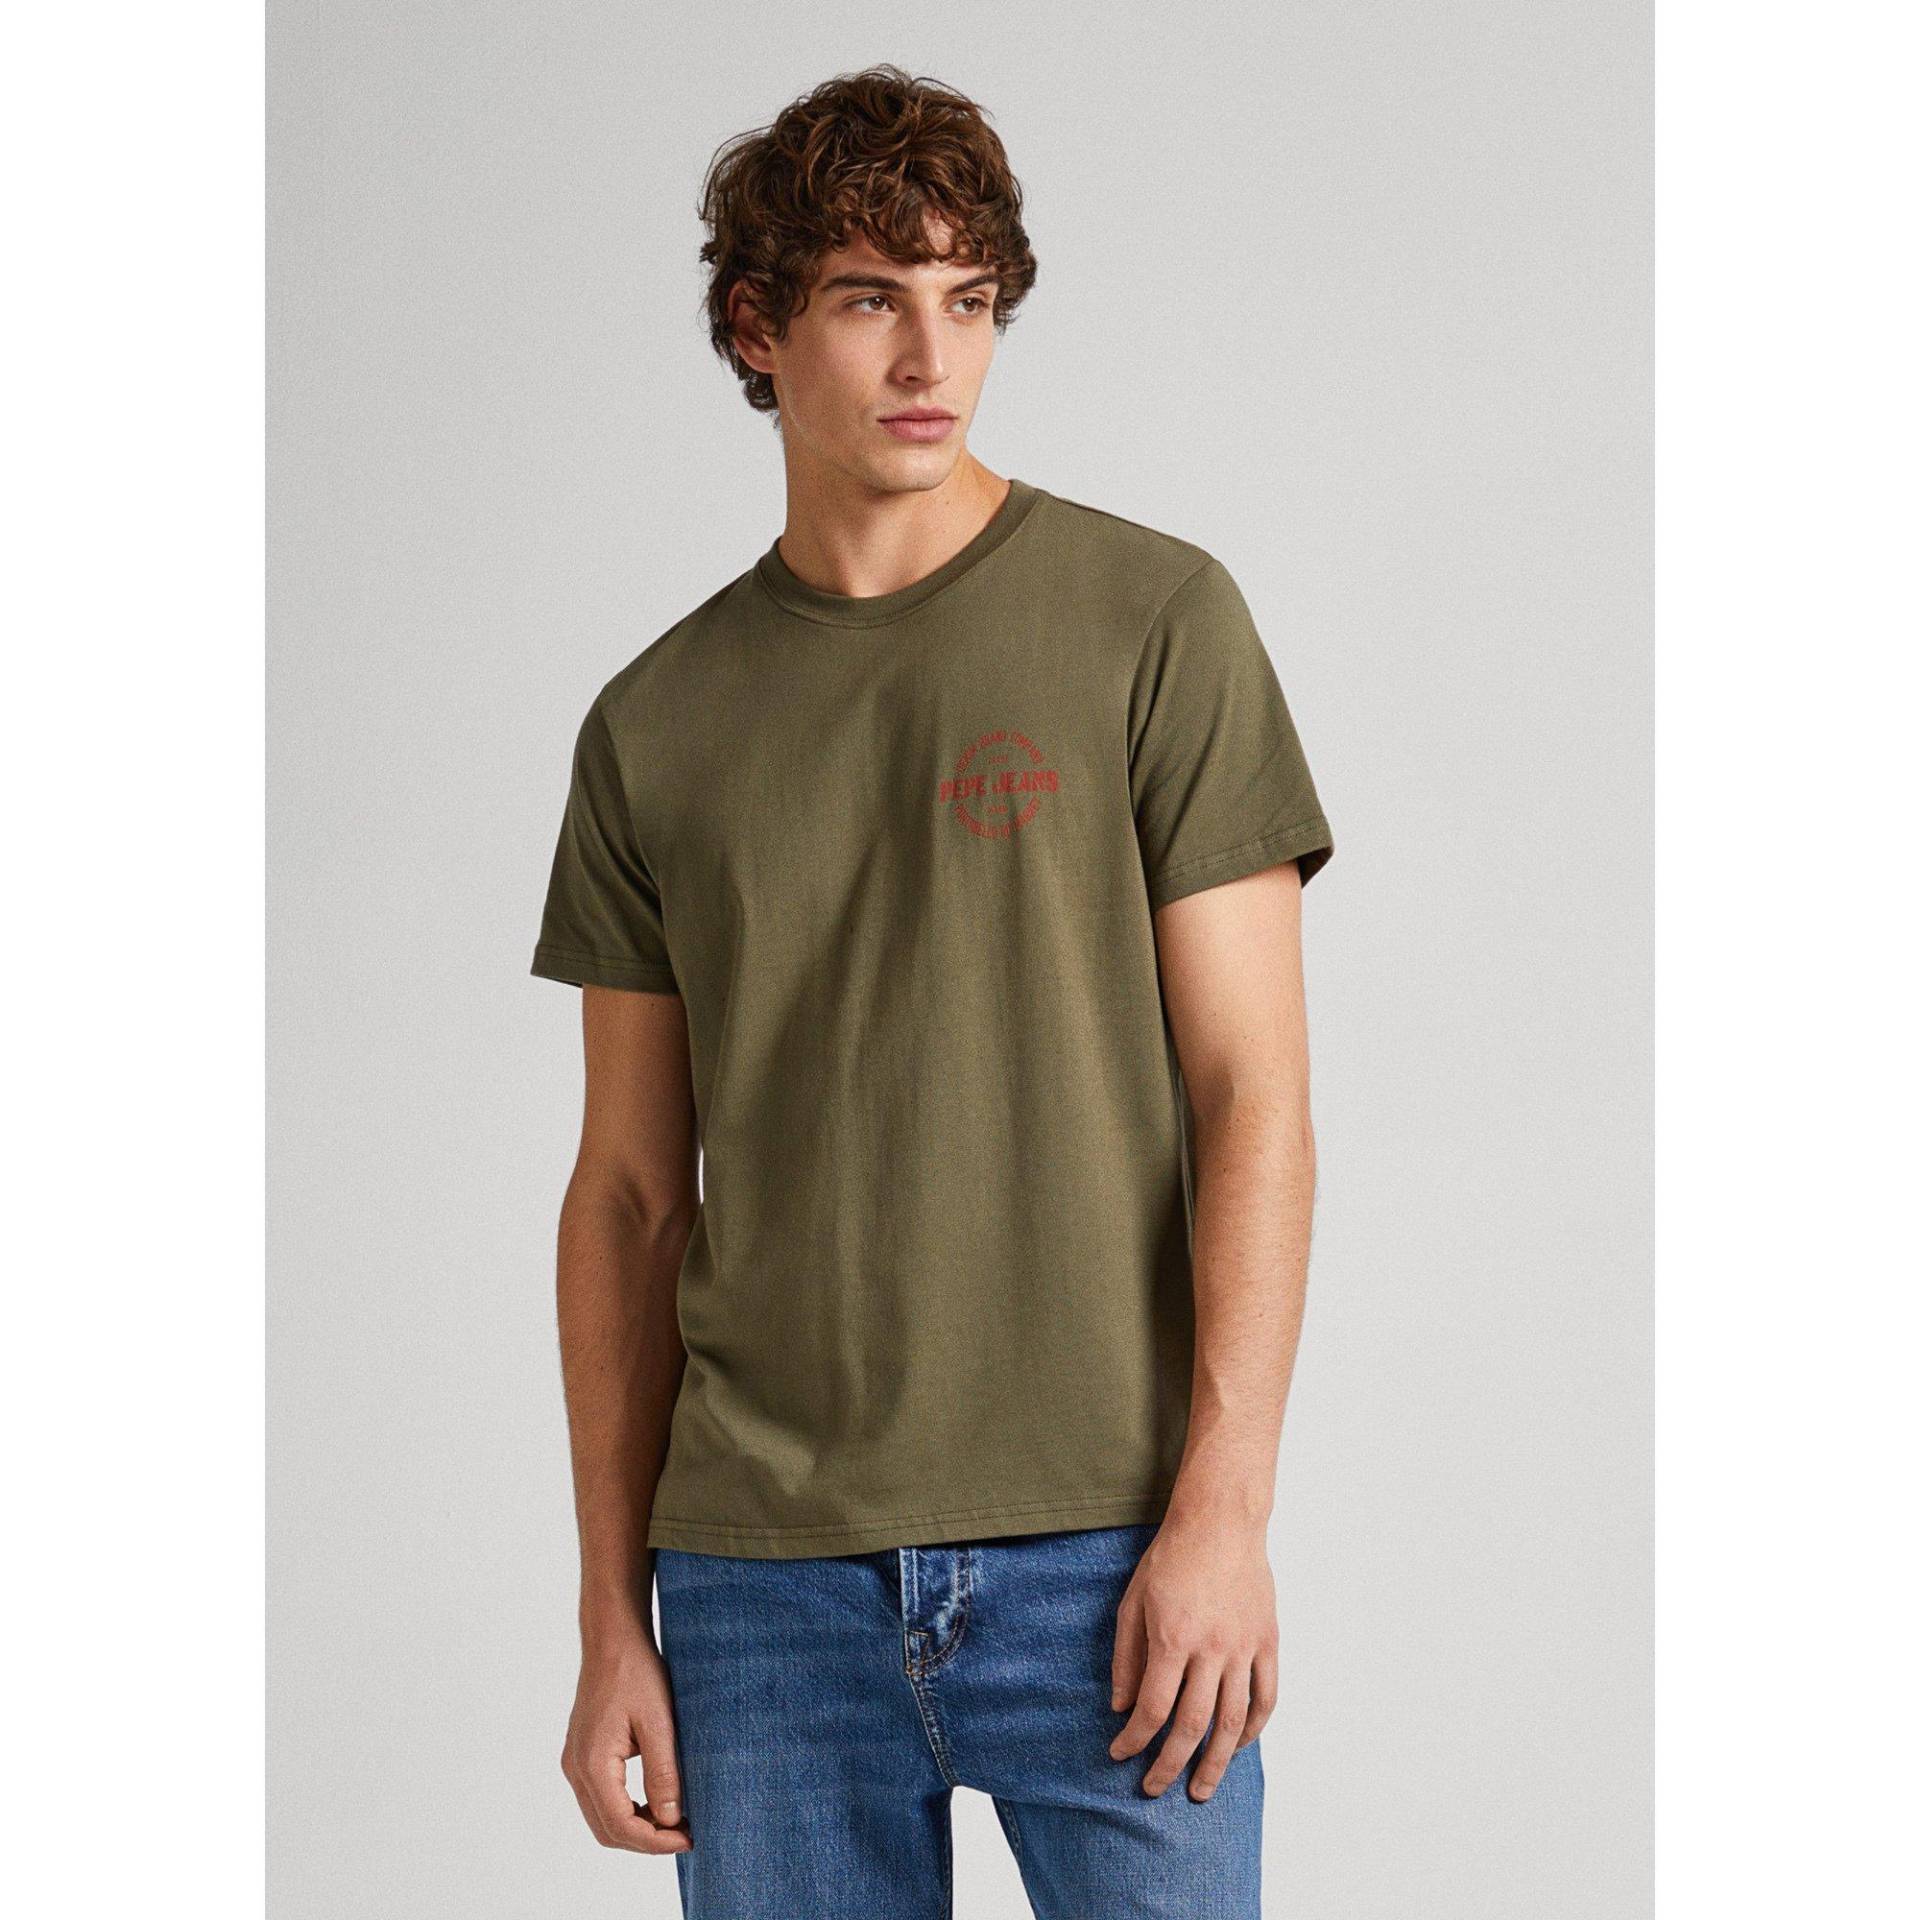 T-shirt Herren Militärgrün S von Pepe Jeans